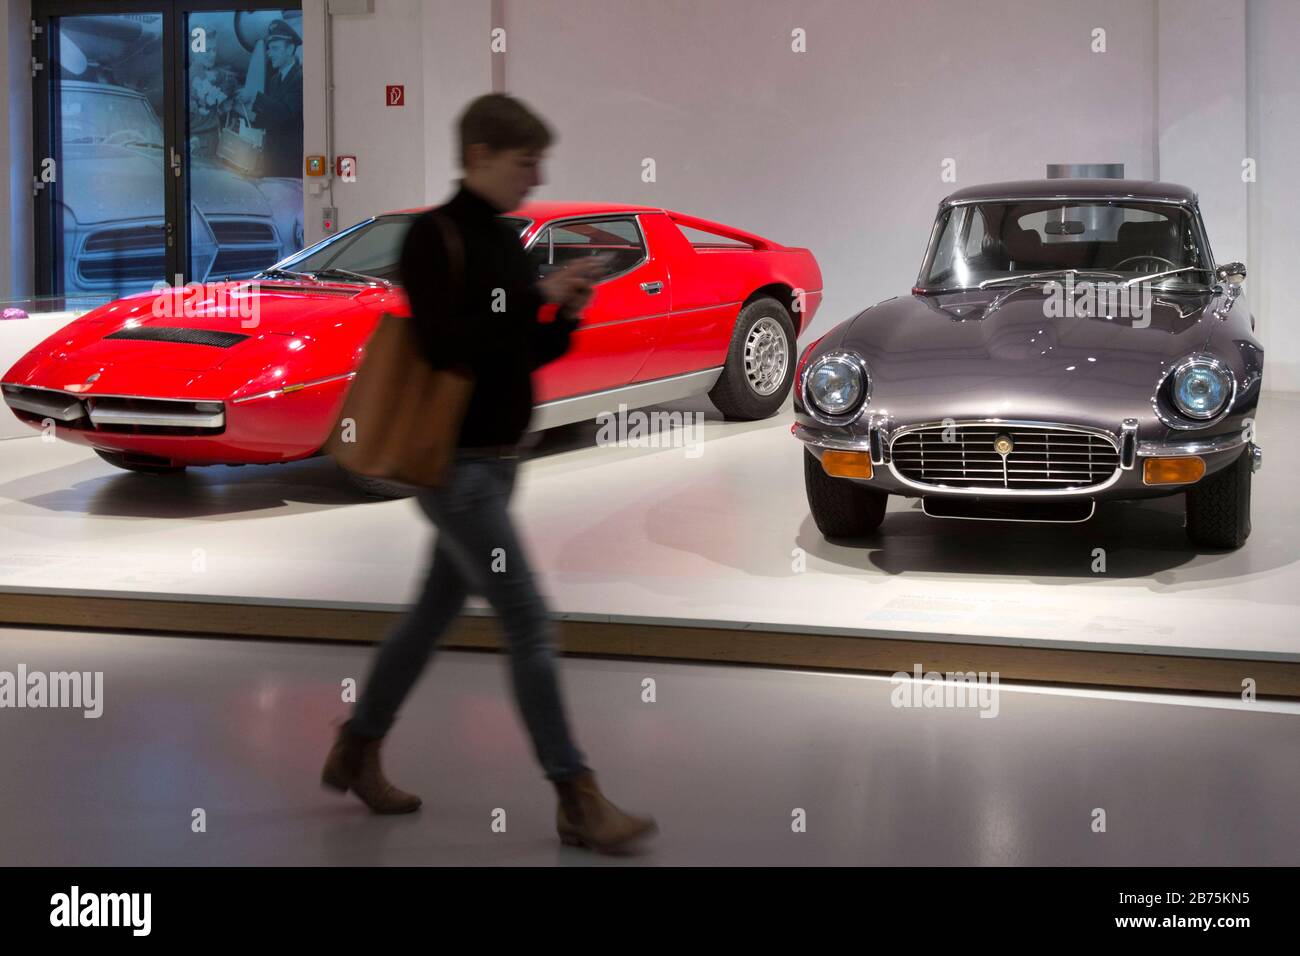 Ein Maserati Merak SS und ein Jaguar E-TYPE sind in der Ausstellung des Deutschen Technikmuseums am 05.12.2017 in Berlin zu sehen. Das Deutsche Technikmuseum verfügt über mehr als 200 historische Oldtimer-Autos. 30 von ihnen sind dauerhaft in der Ausstellung "Mensch in Fahrt" zu sehen, die anderen Fahrzeuge befinden sich im Museumsdepot. [Automatisierte Übersetzung] Stockfoto